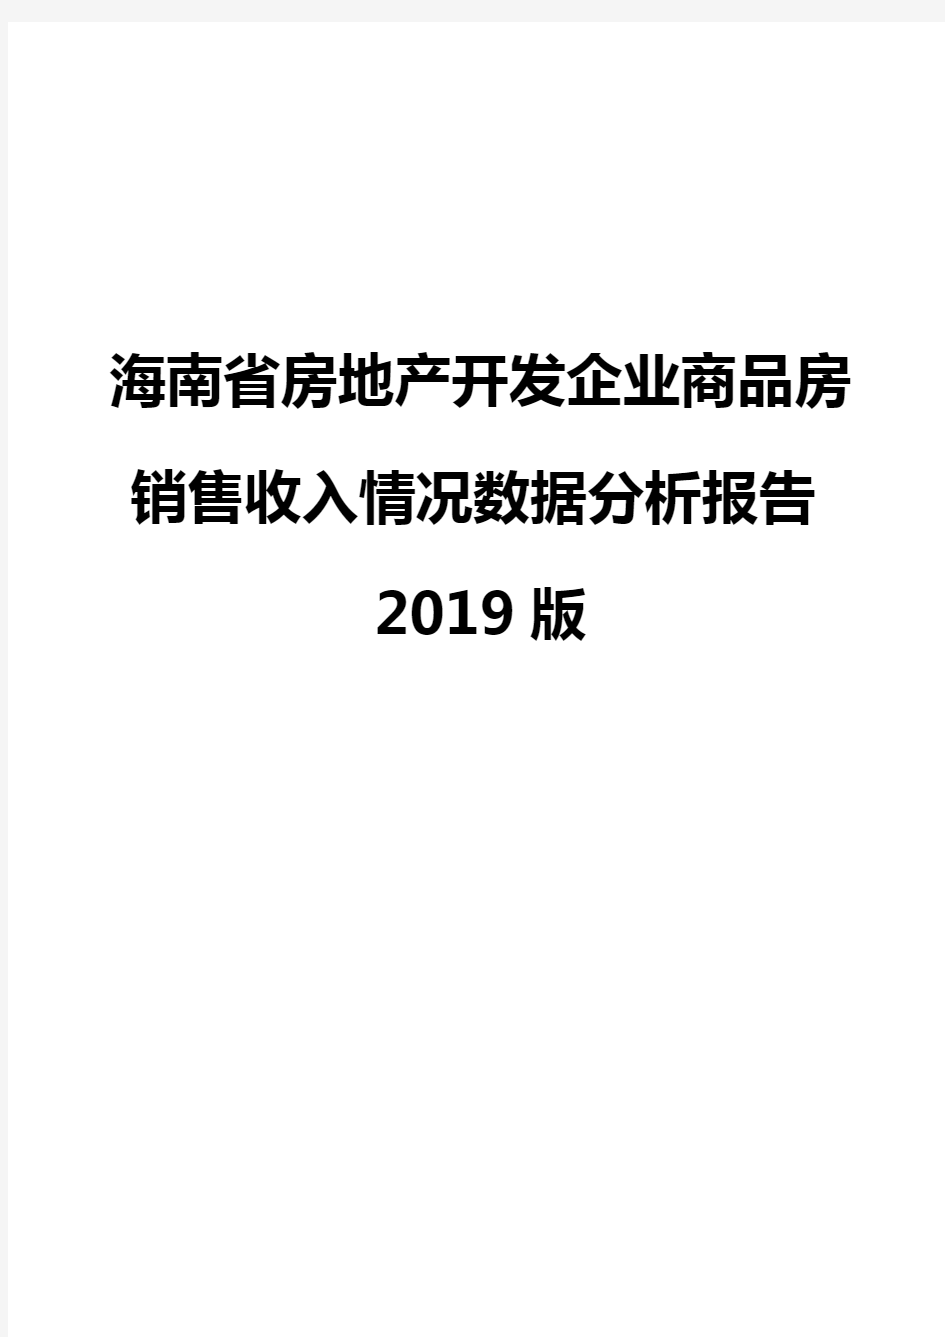 海南省房地产开发企业商品房销售收入情况数据分析报告2019版